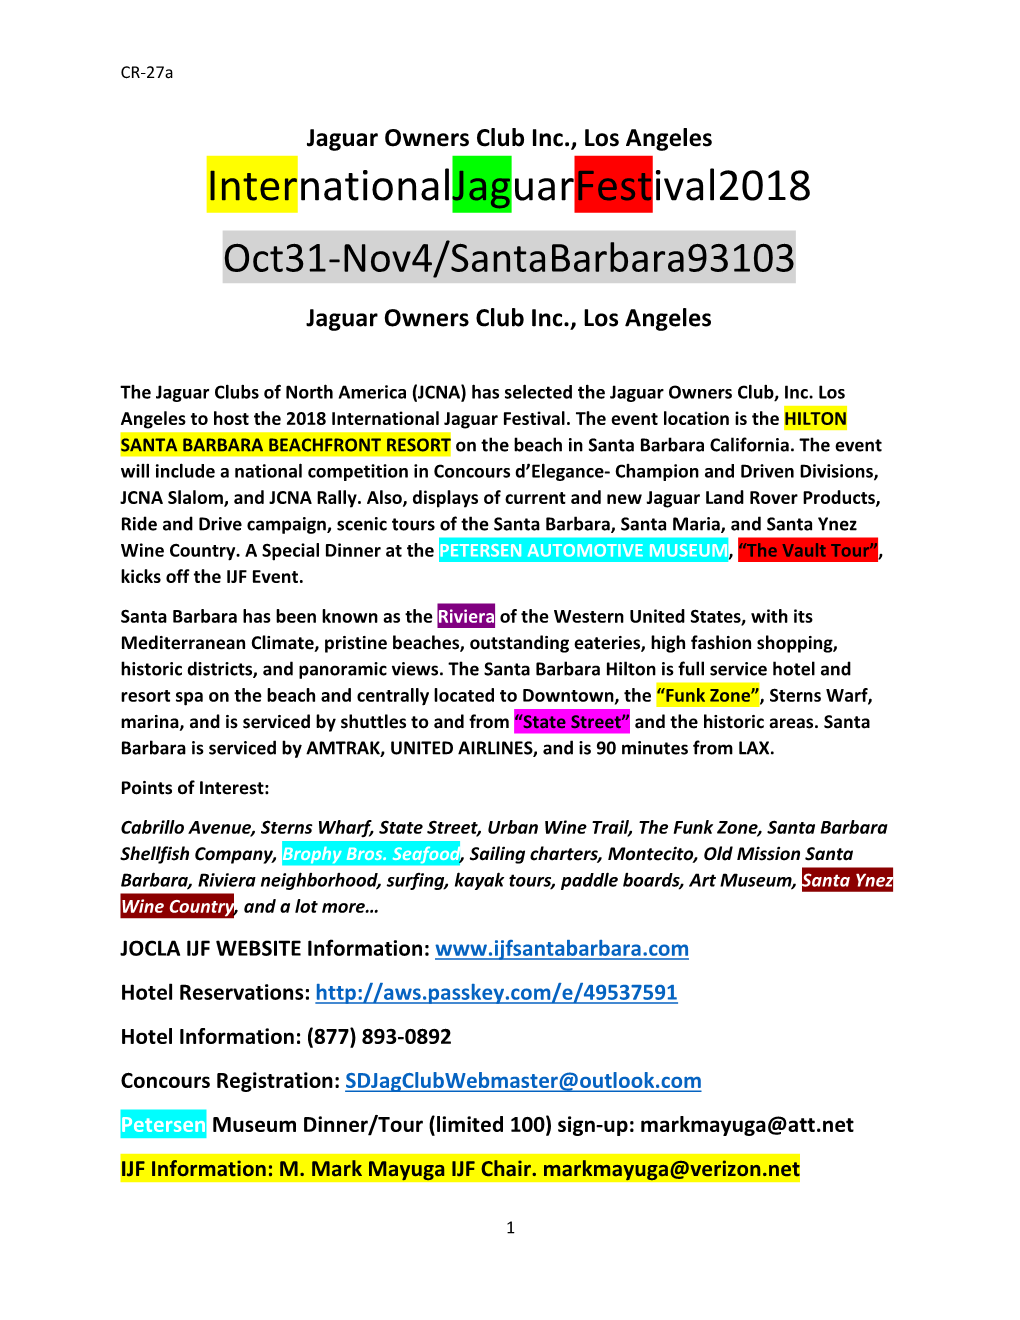 2018 JCNA International Jaguar Festival Overview